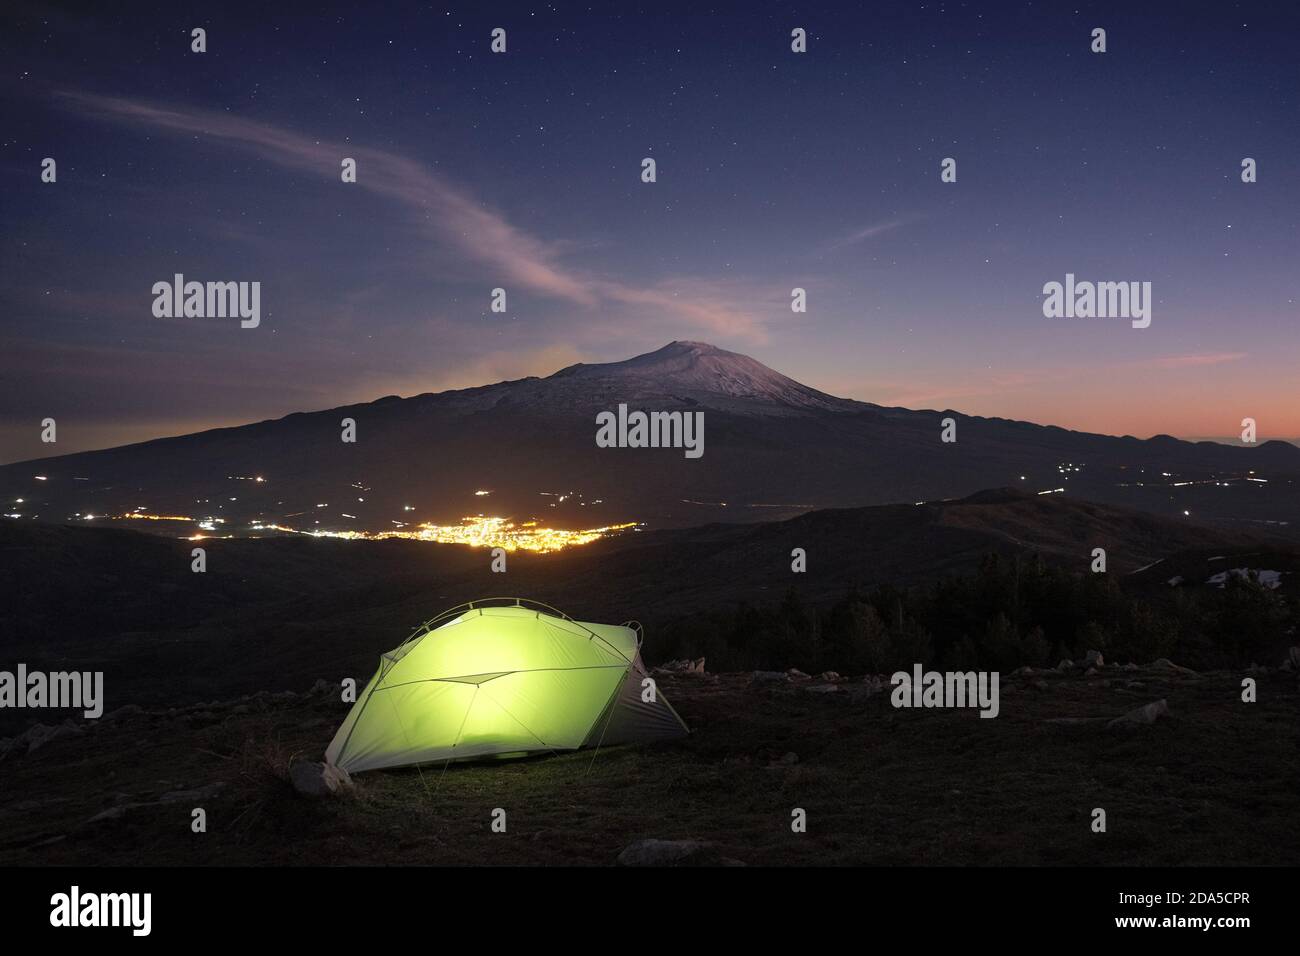 Tenda illuminata sulla montagna del Parco dei Nebrodi al crepuscolo, su luci di fondo della città sotto il vulcano Etna e cielo stellato, Sicilia Foto Stock